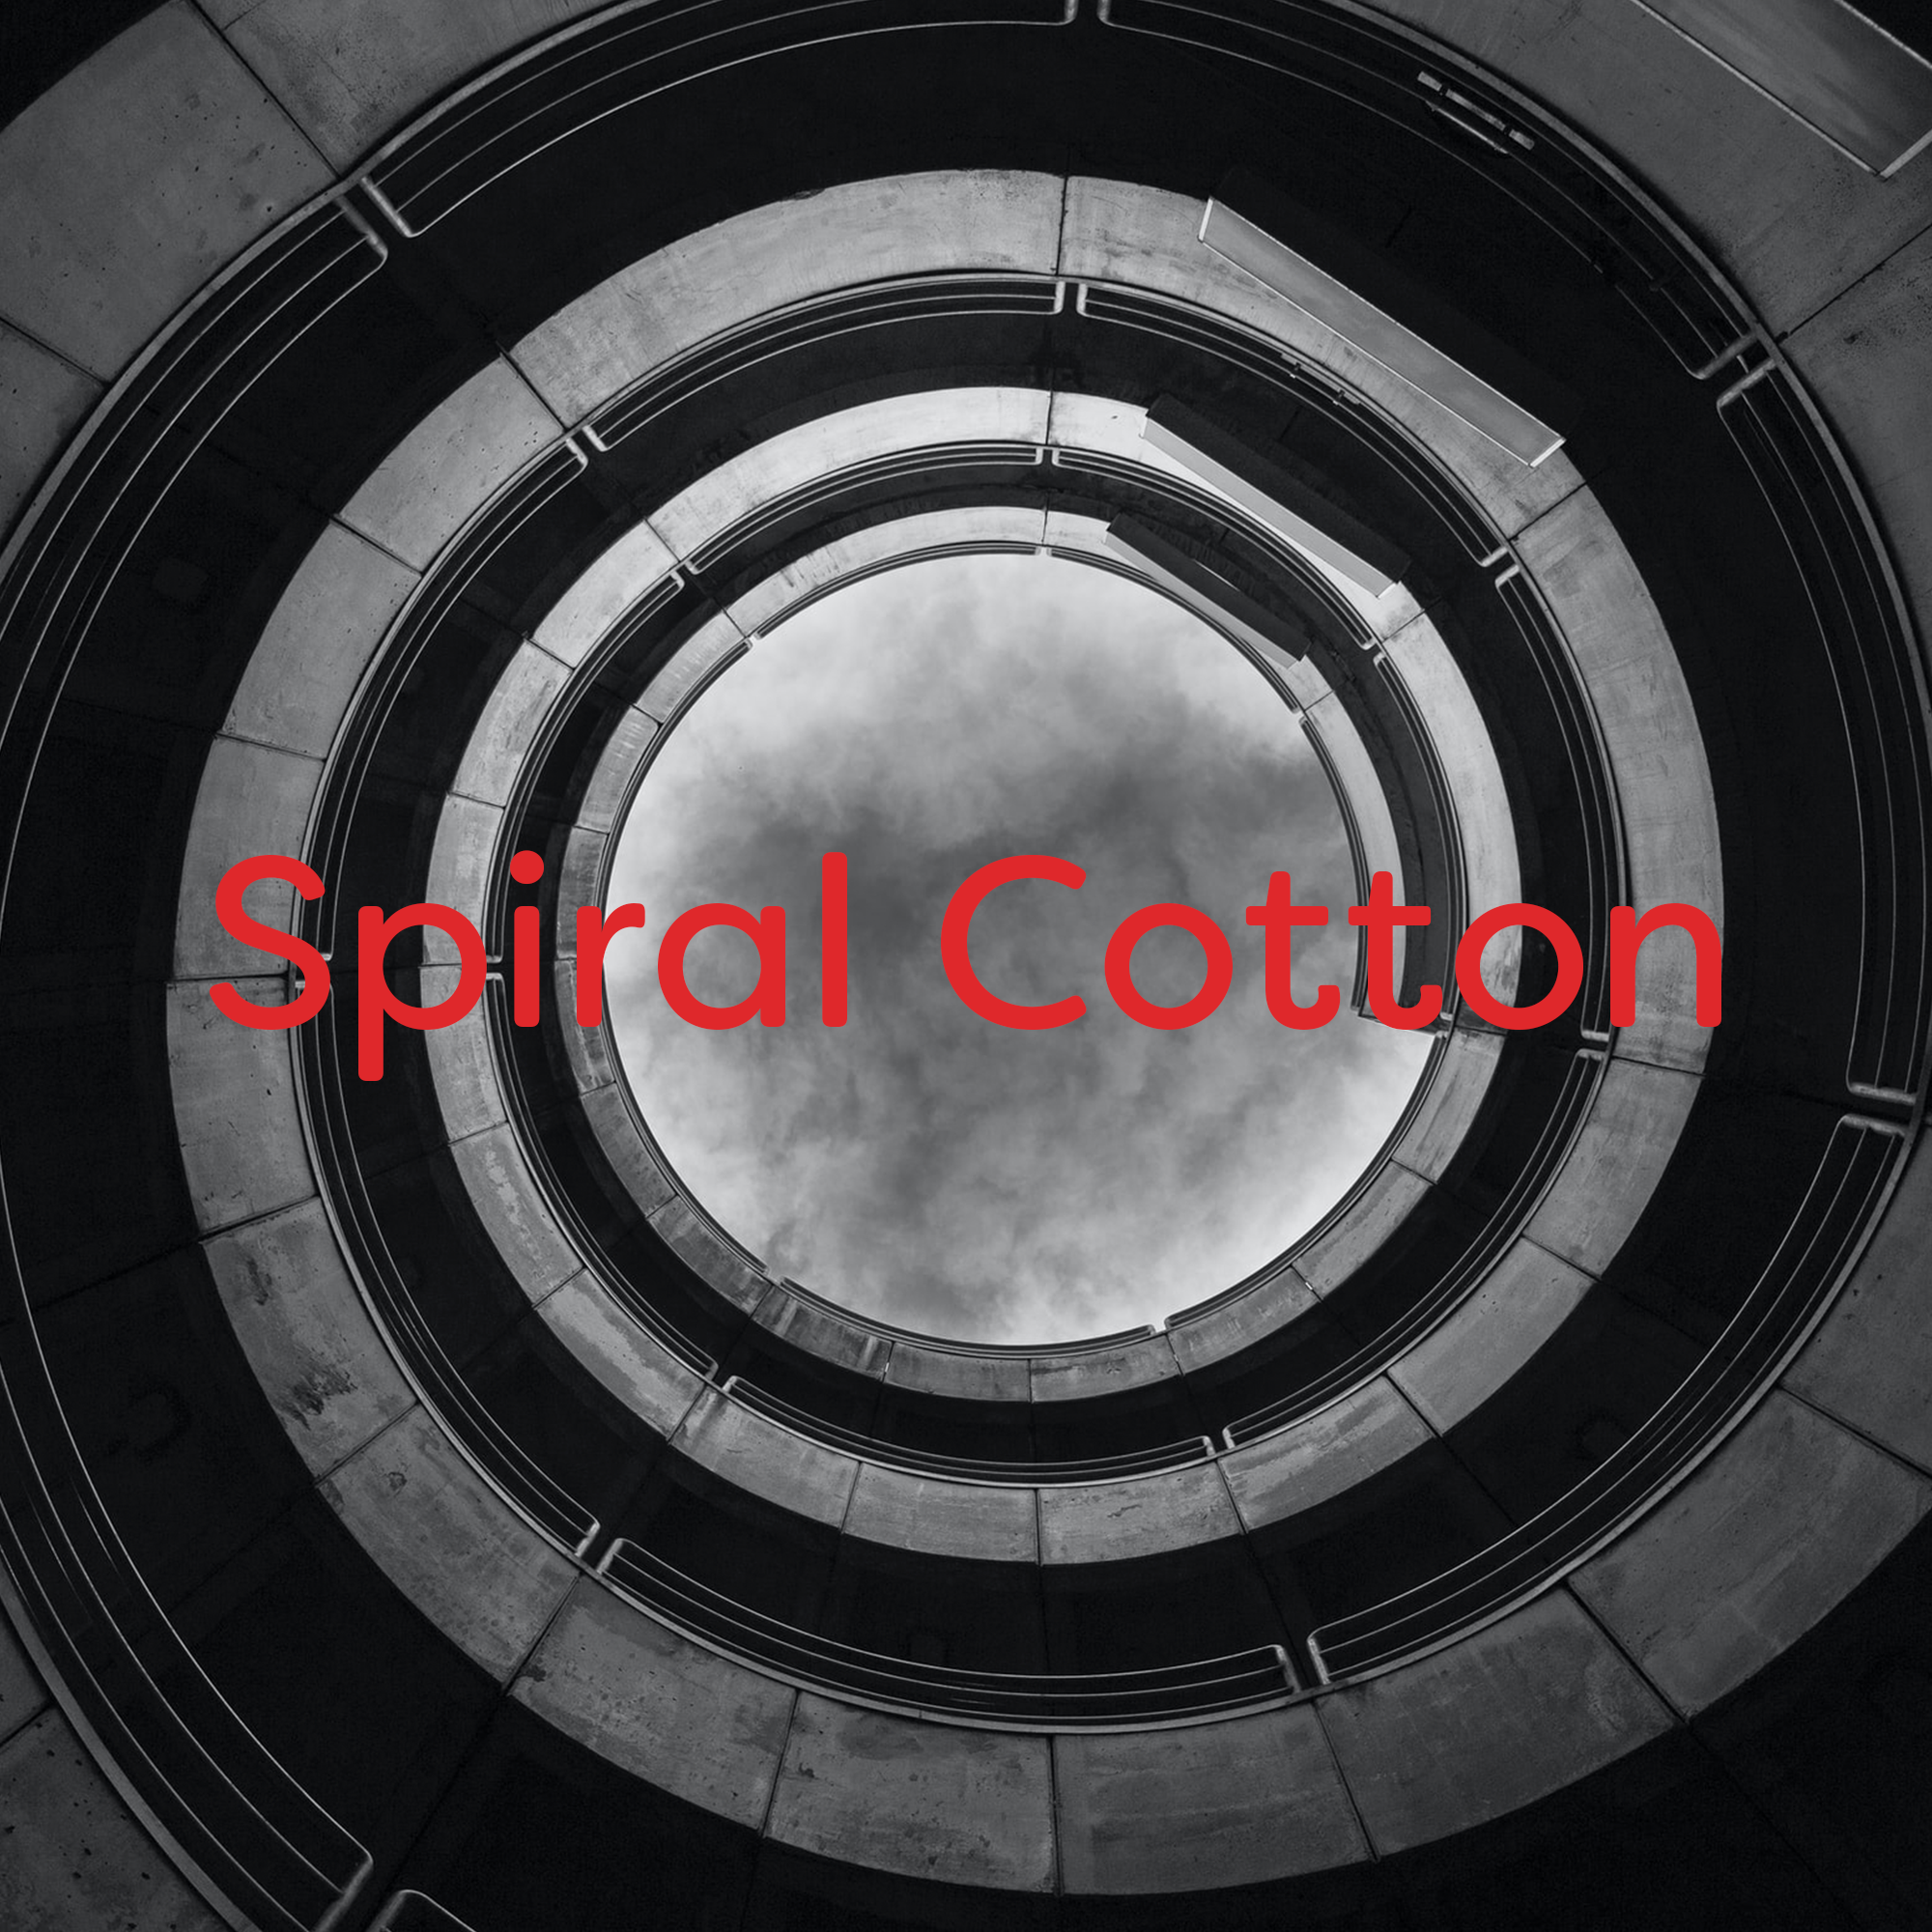 Spiral Cotton